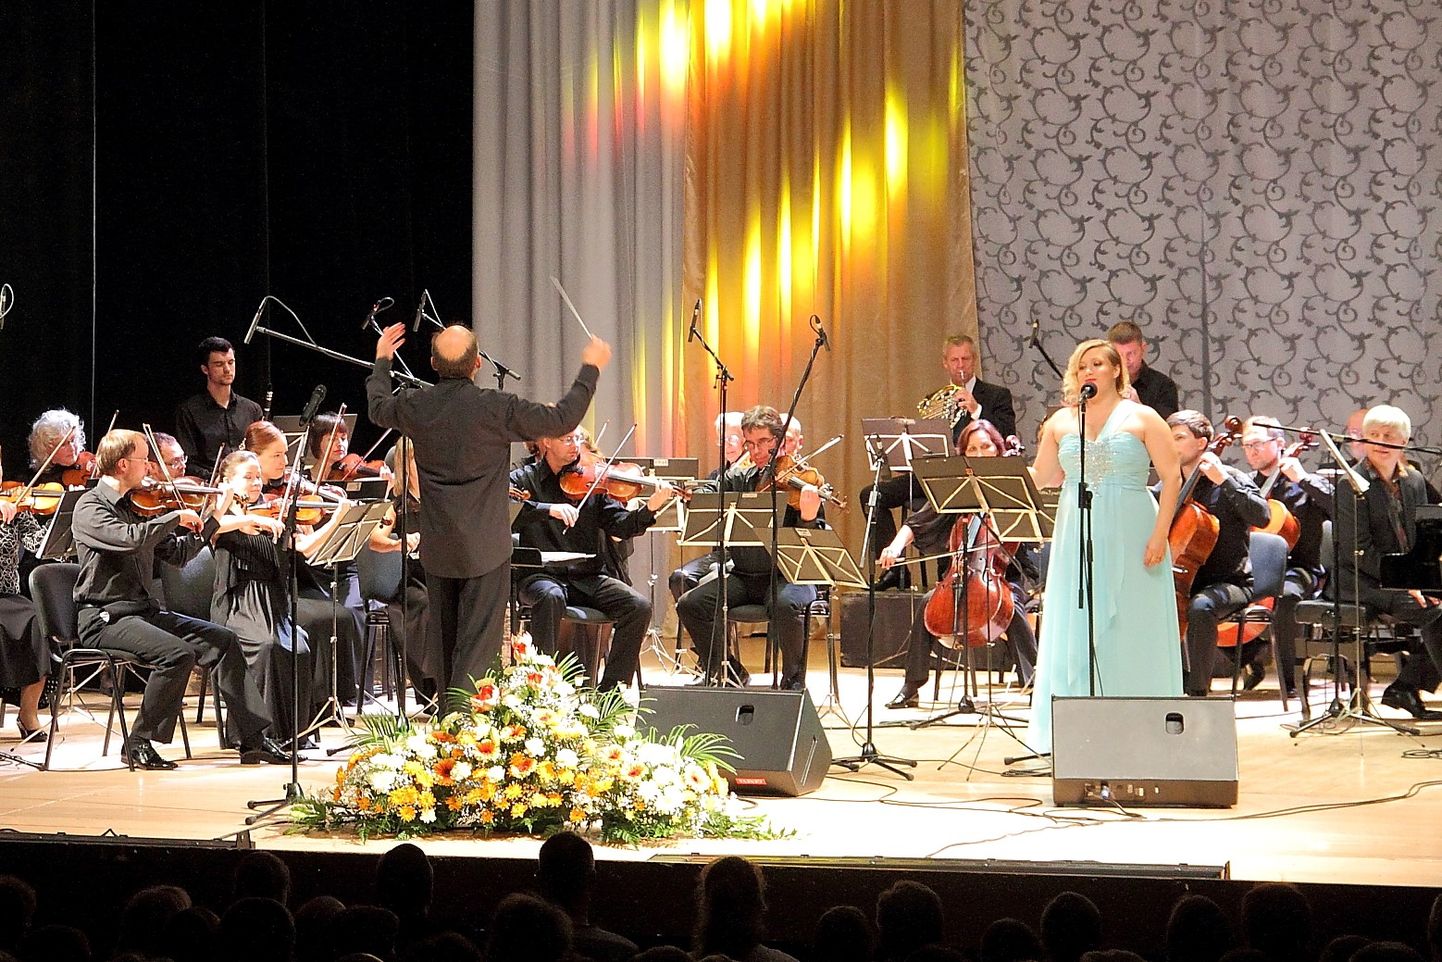 Нарвский симфонический оркестр традиционно открывает программу Осенней столицы, но в этот раз его выступление обещает быть неожиданным.